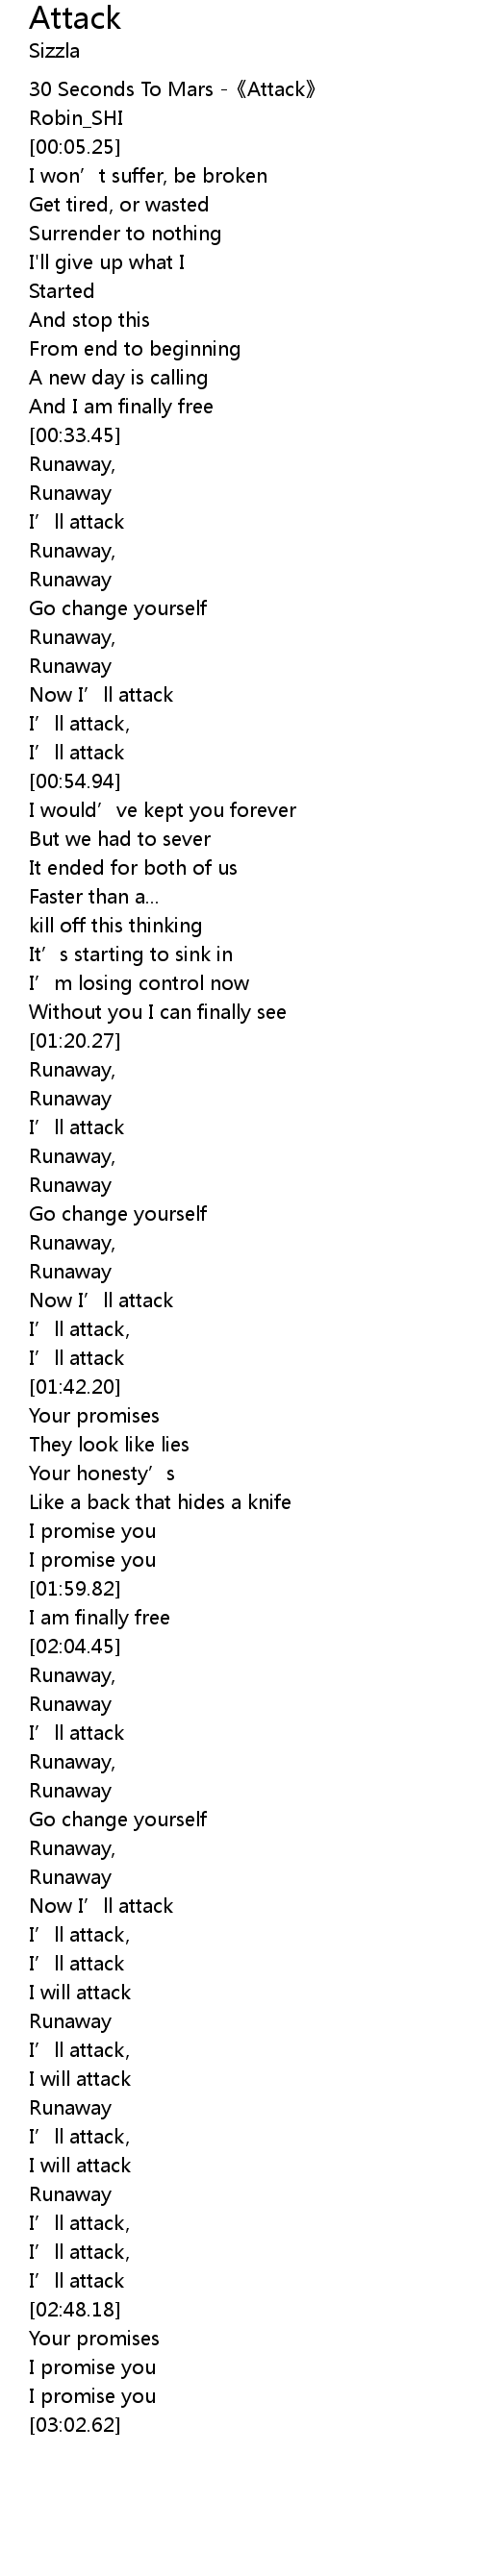 Attack Lyrics